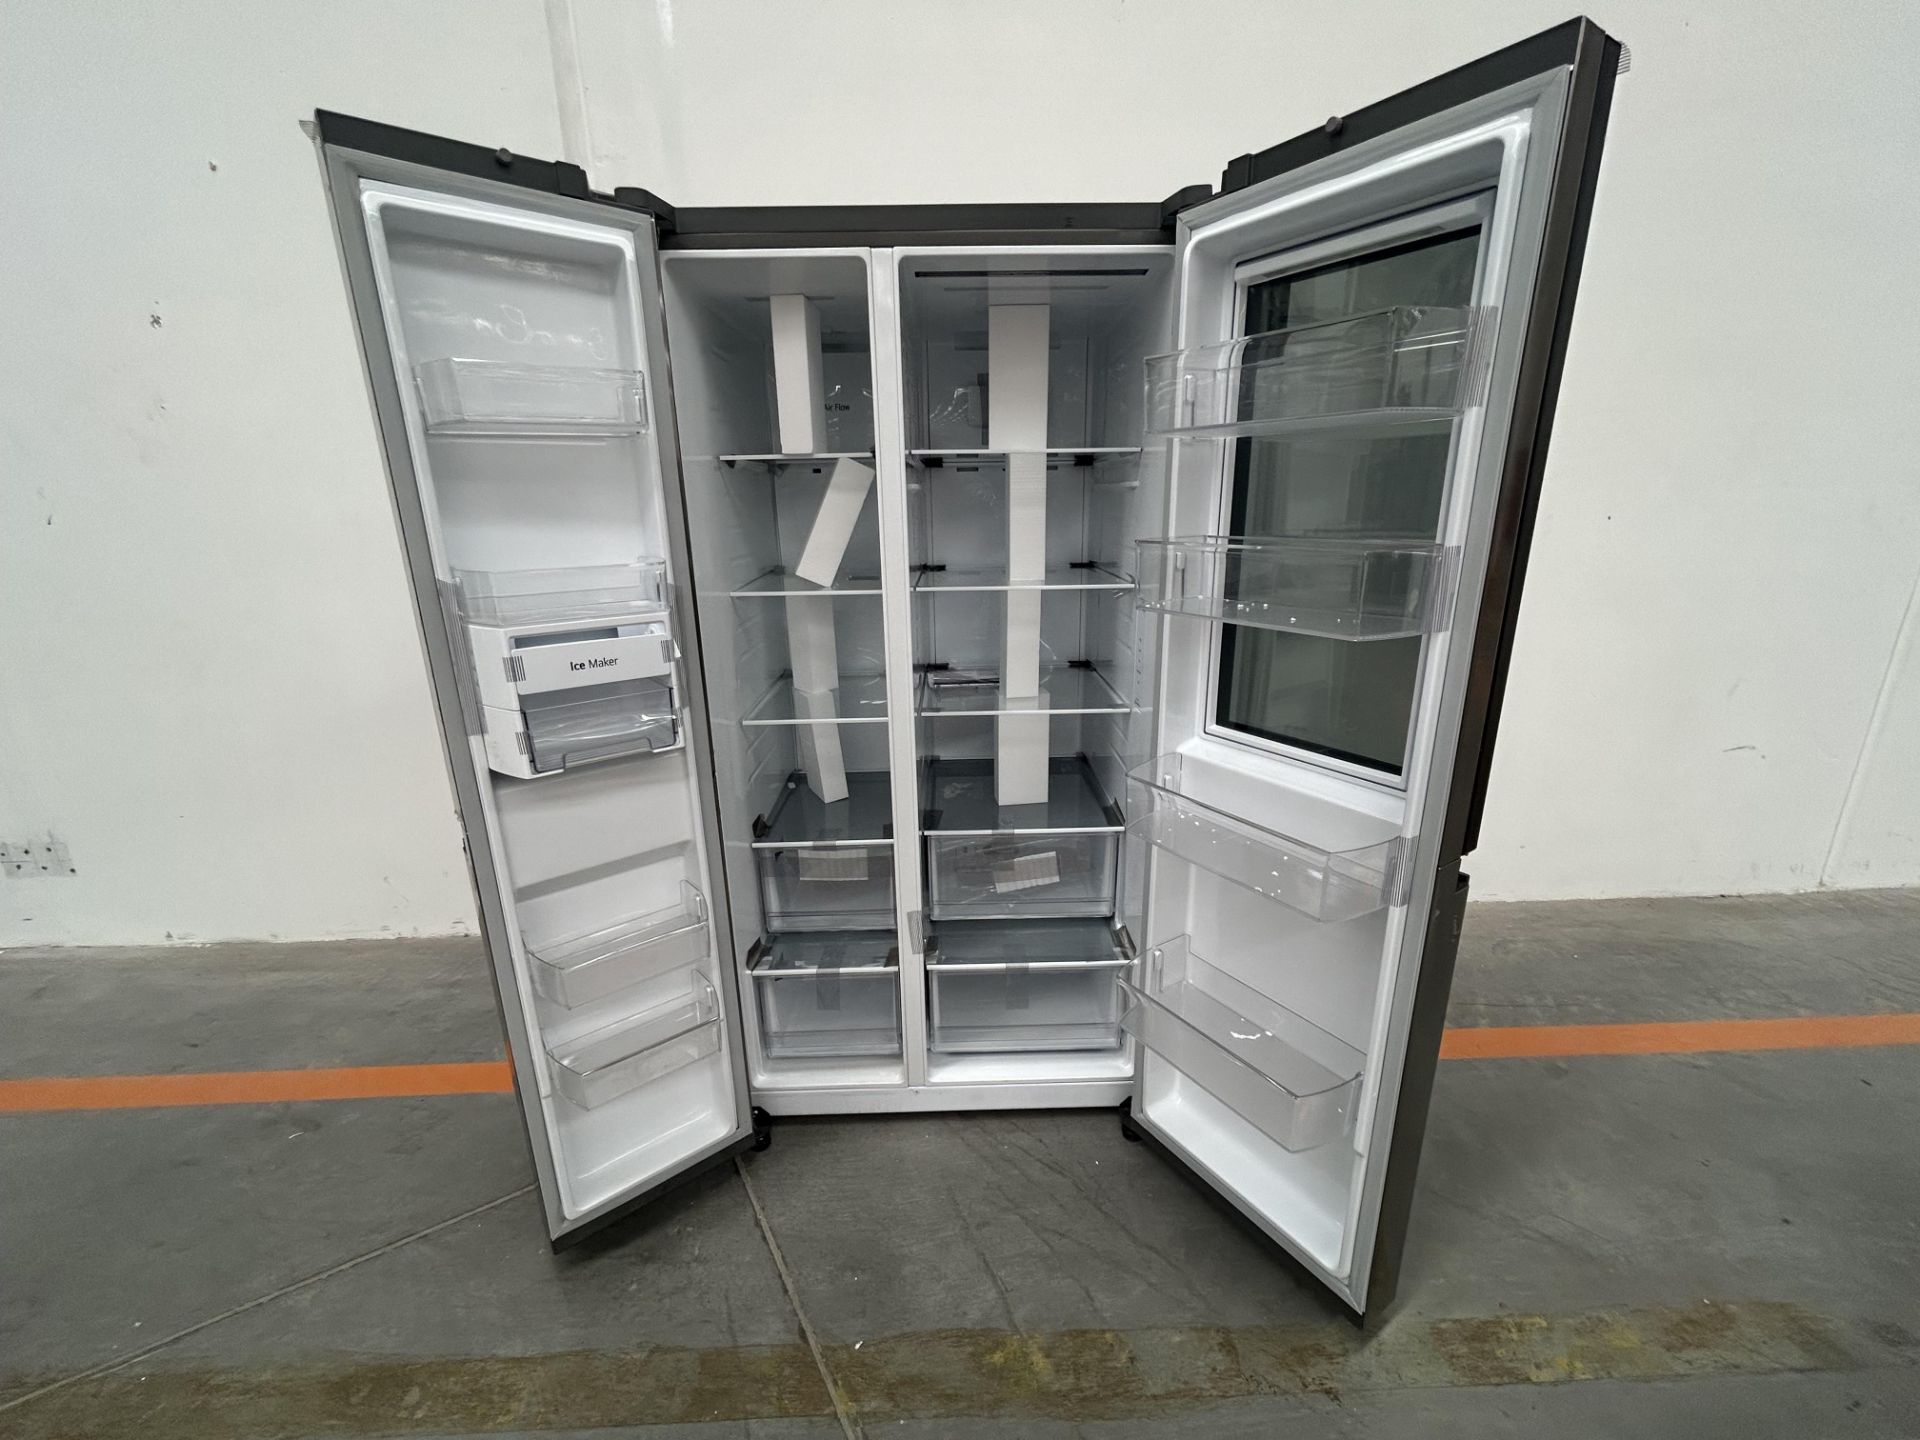 (NUEVO) Refrigerador Marca LG, Modelo VS27BXQP, Serie Y2L078, Color GRIS - Image 4 of 4